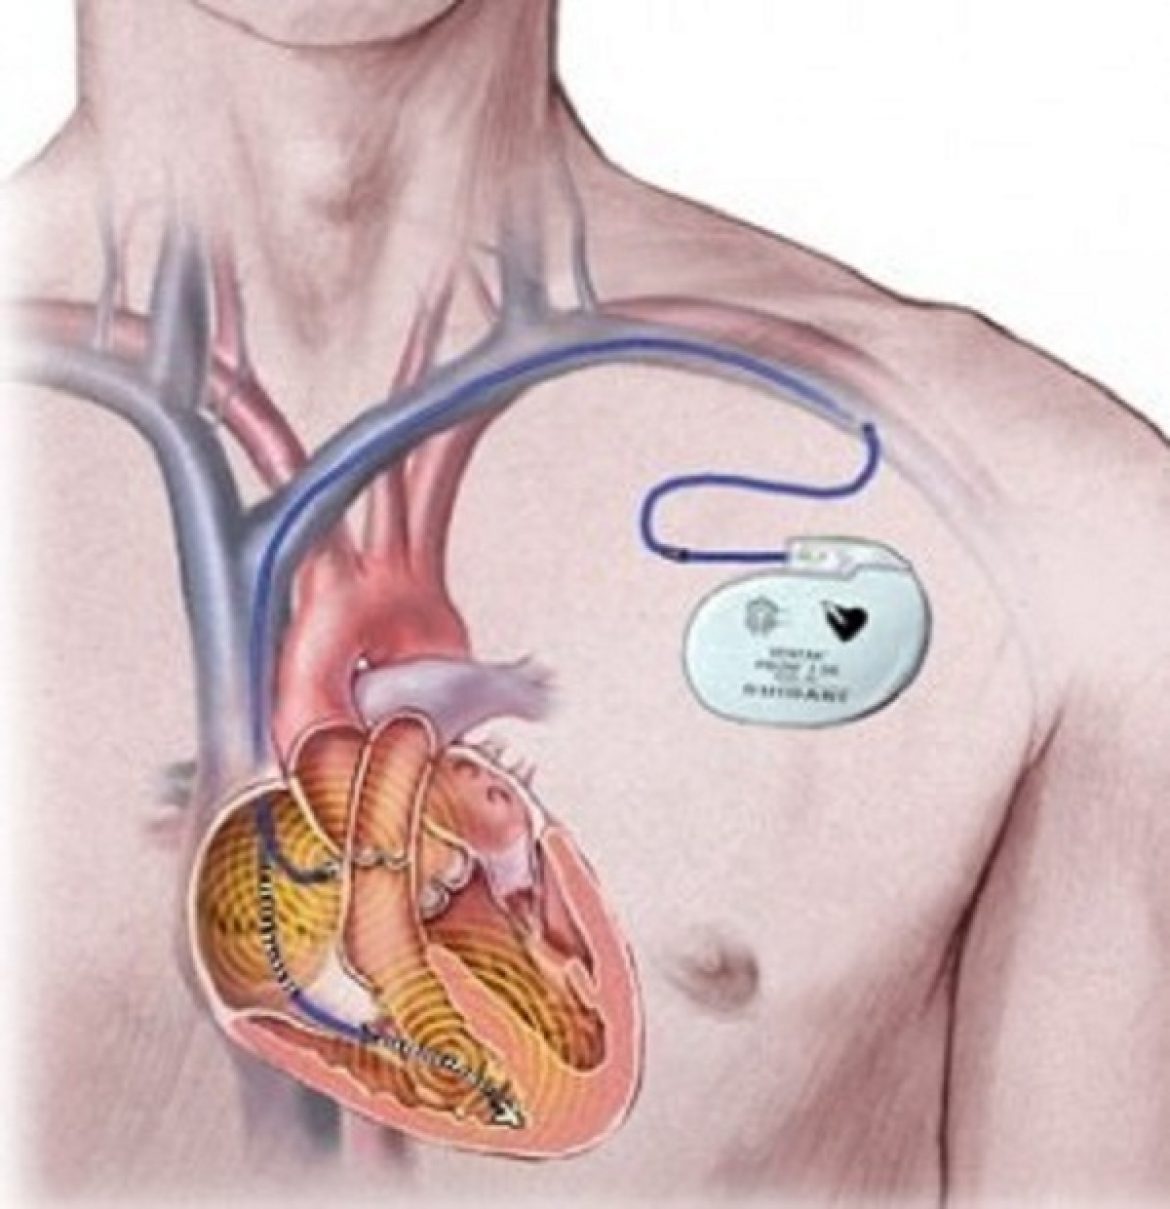 При наличии кардиостимулятора можно. Кардиостимулятор брадикардия. Имплантируемый кардиовертер-дефибриллятор. Имплантация кардиовертера-дефибриллятора. Кардиостимулятор сердца имплантируемый.